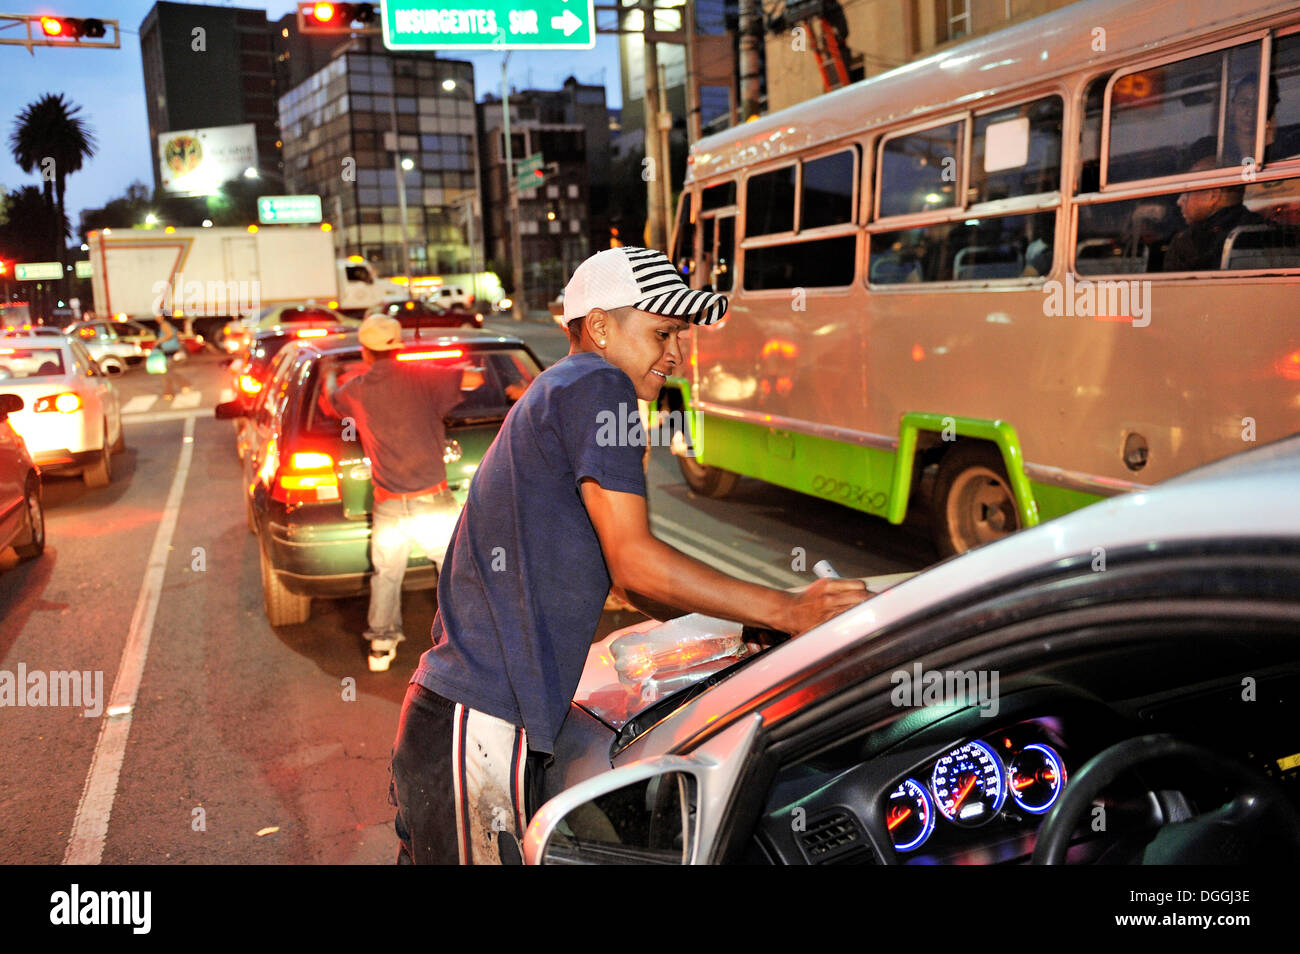 Los jóvenes, los niños de la calle, limpieza de ventanas de autos en una intersección, tratando de ganar algún dinero, Ciudad de México, Ciudad de México. Foto de stock